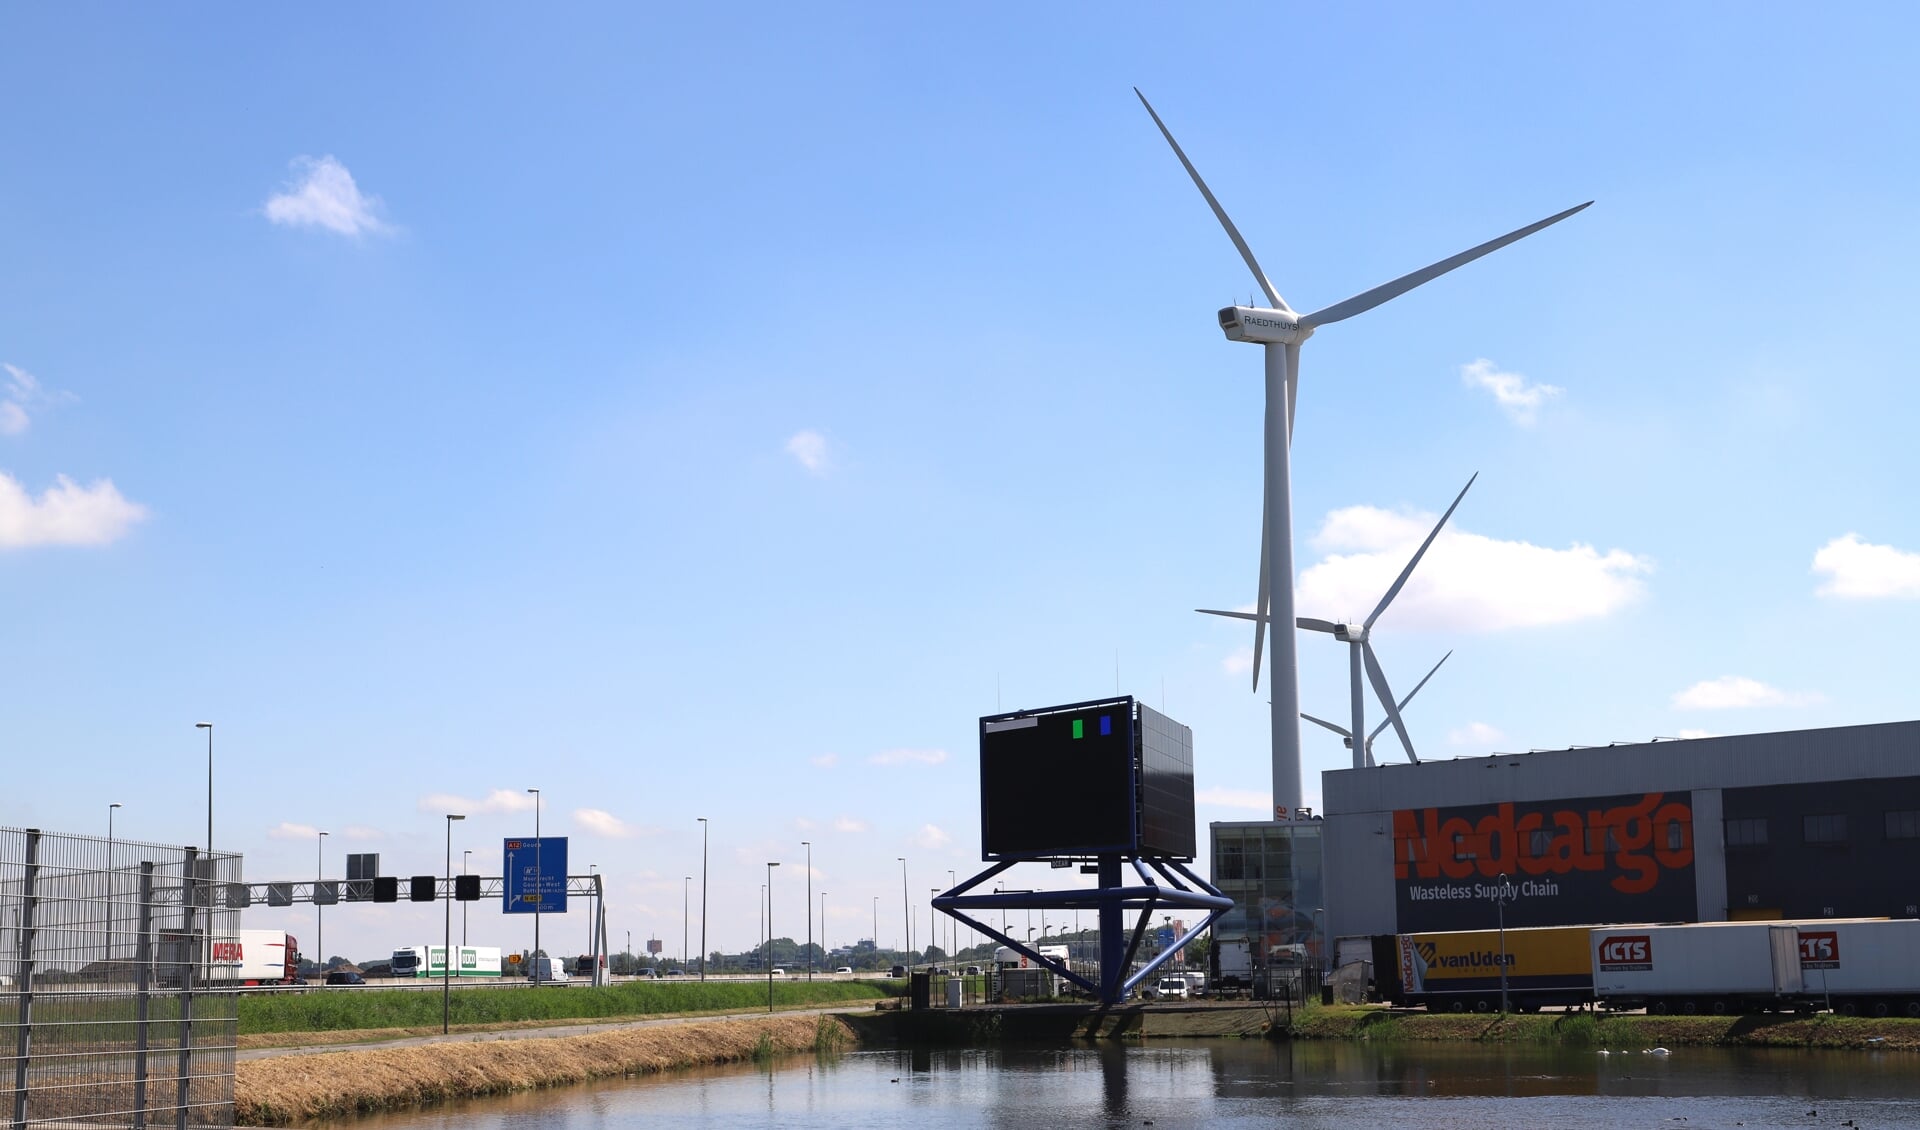 Sinds 2009 staan vier windmolens op het Distripark van buurgemeente Waddinxveen. Zuidplas daarentegen wil deze 'gedrochten' niet.